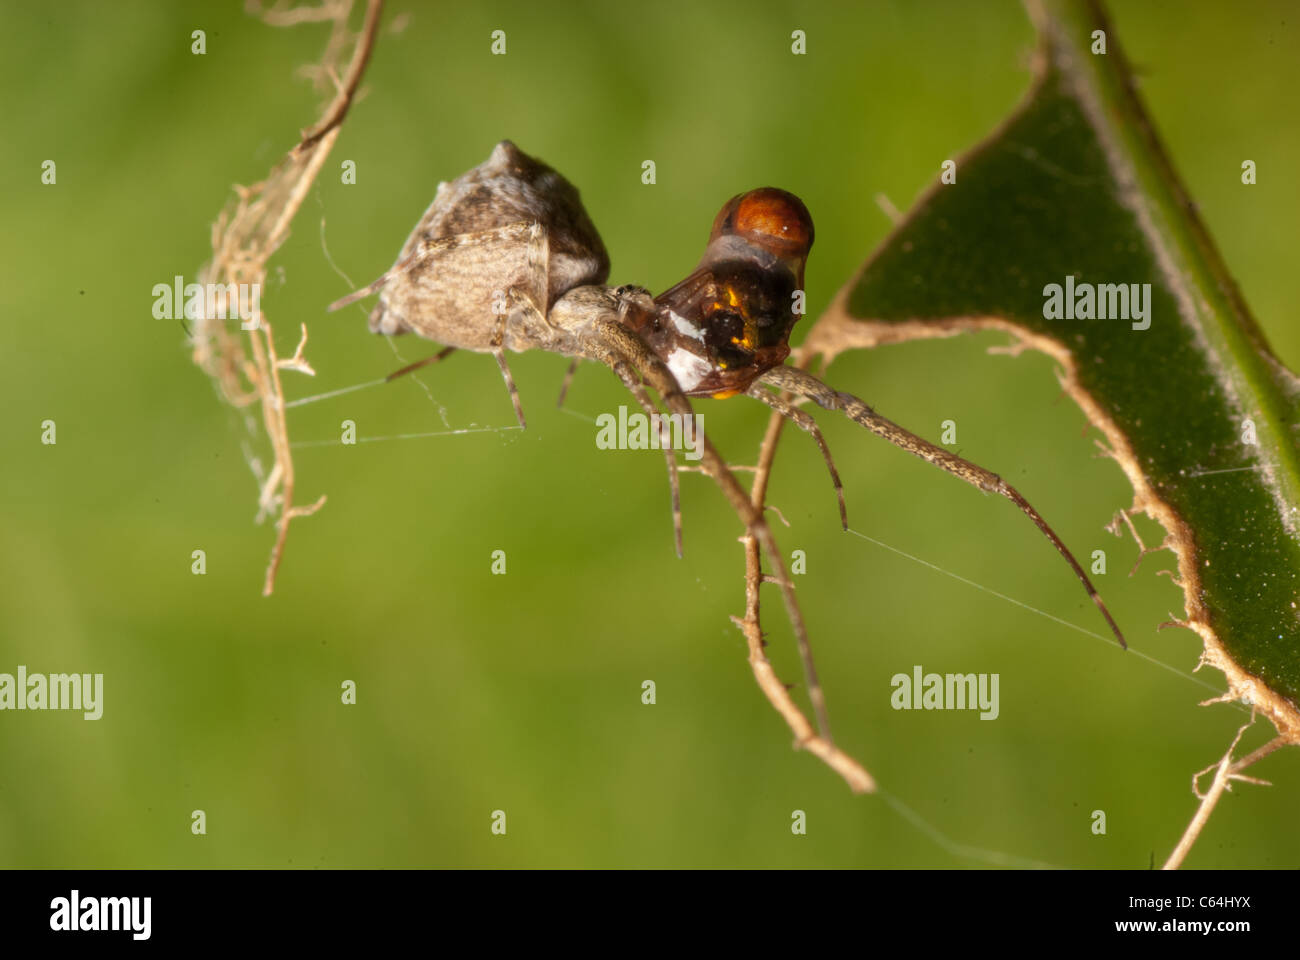 Proie araignée insecte macro shot Banque D'Images